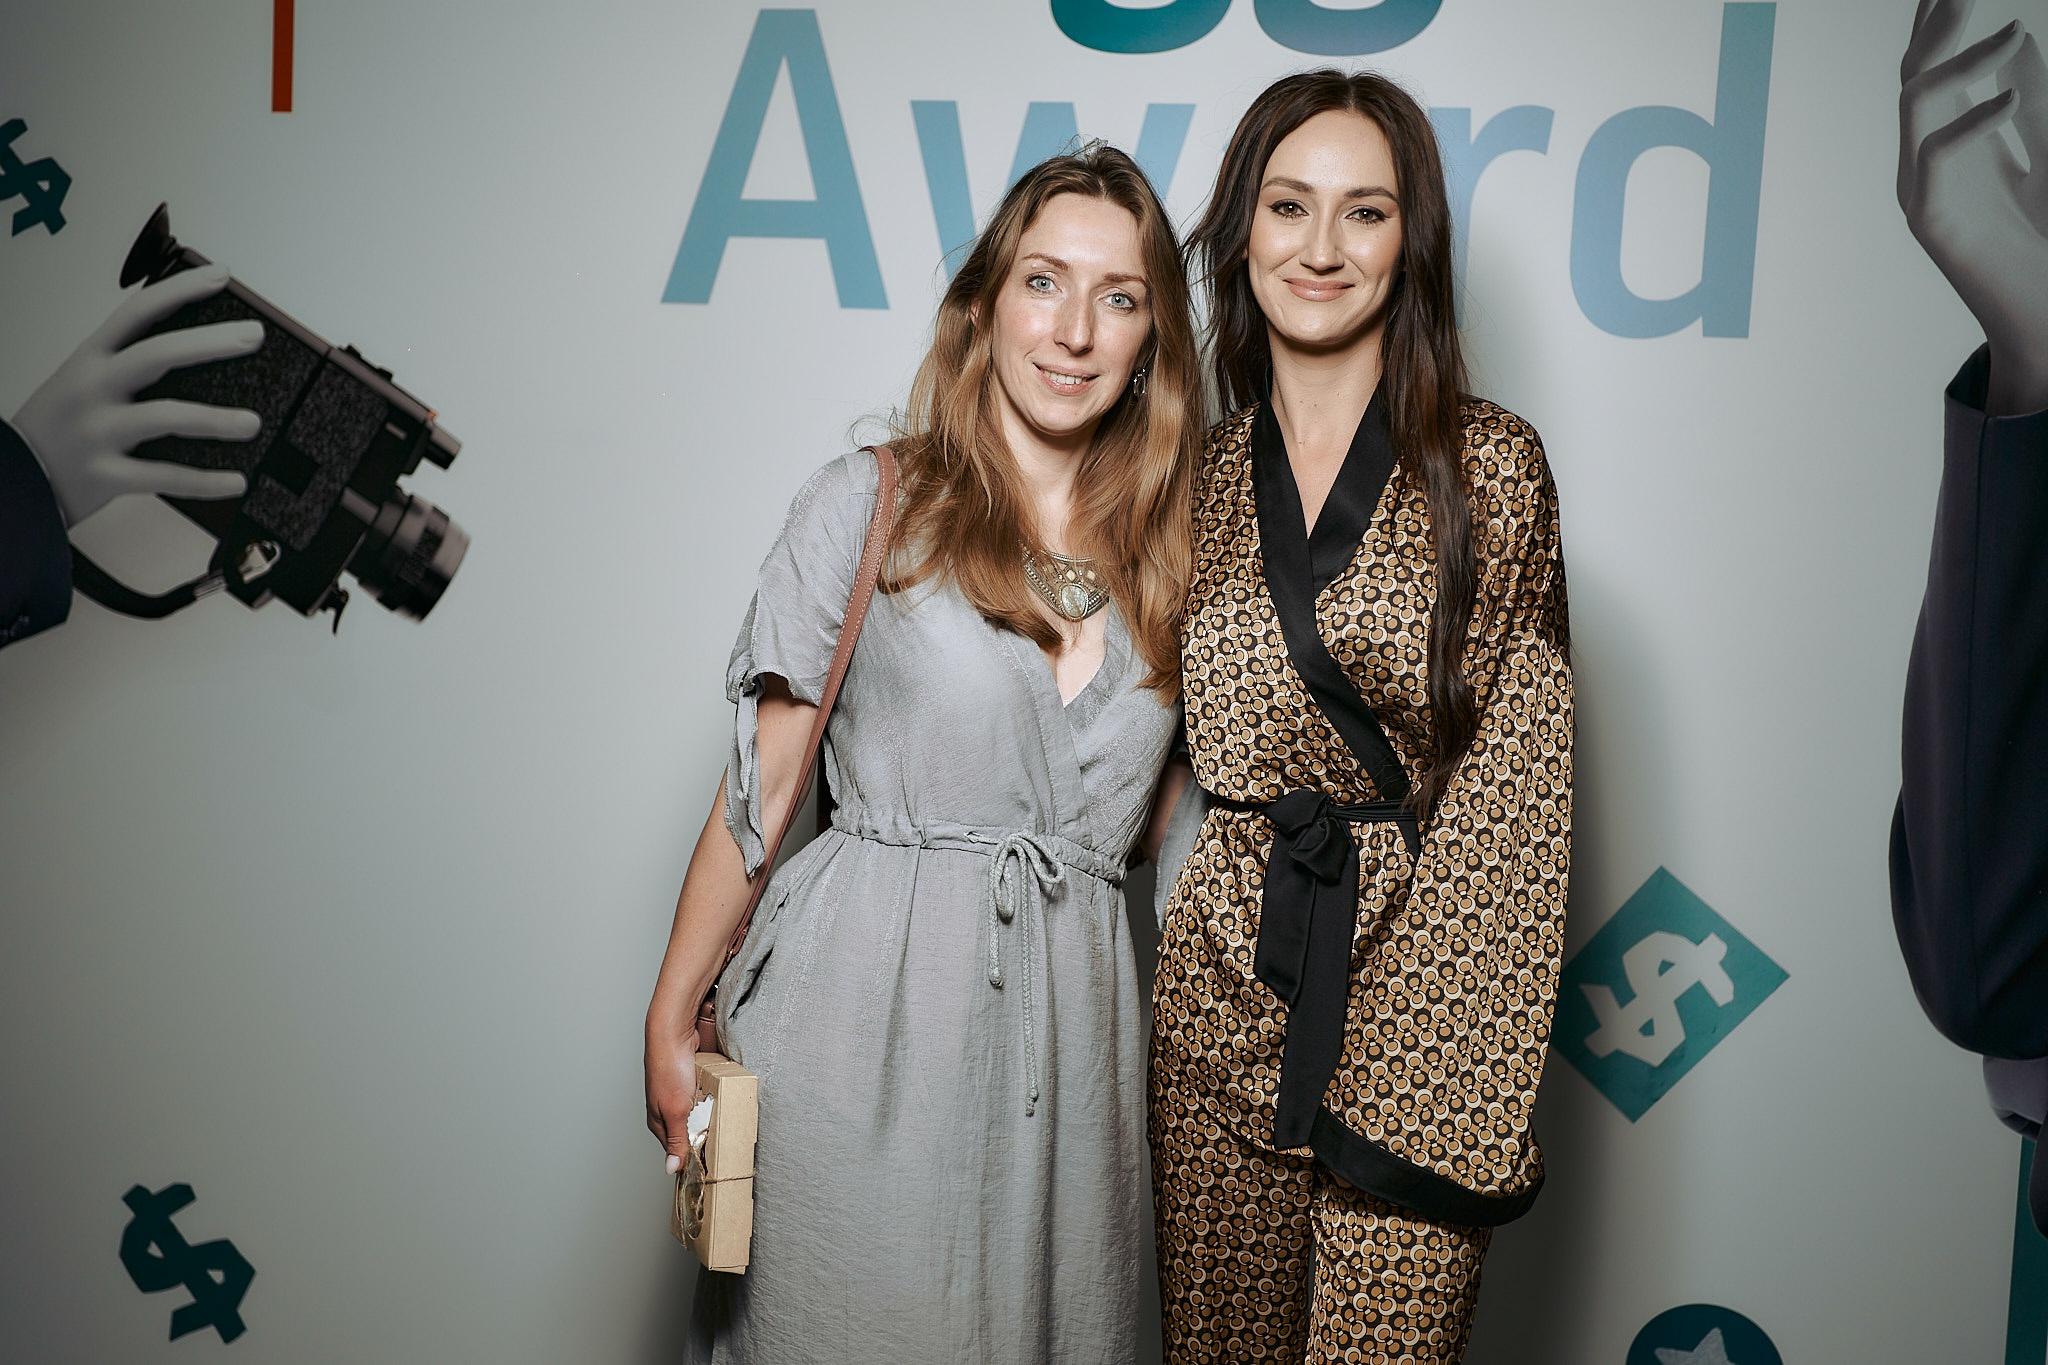 Fin Blogger Award 2023: нагородження найкращих фінансових блогерів України